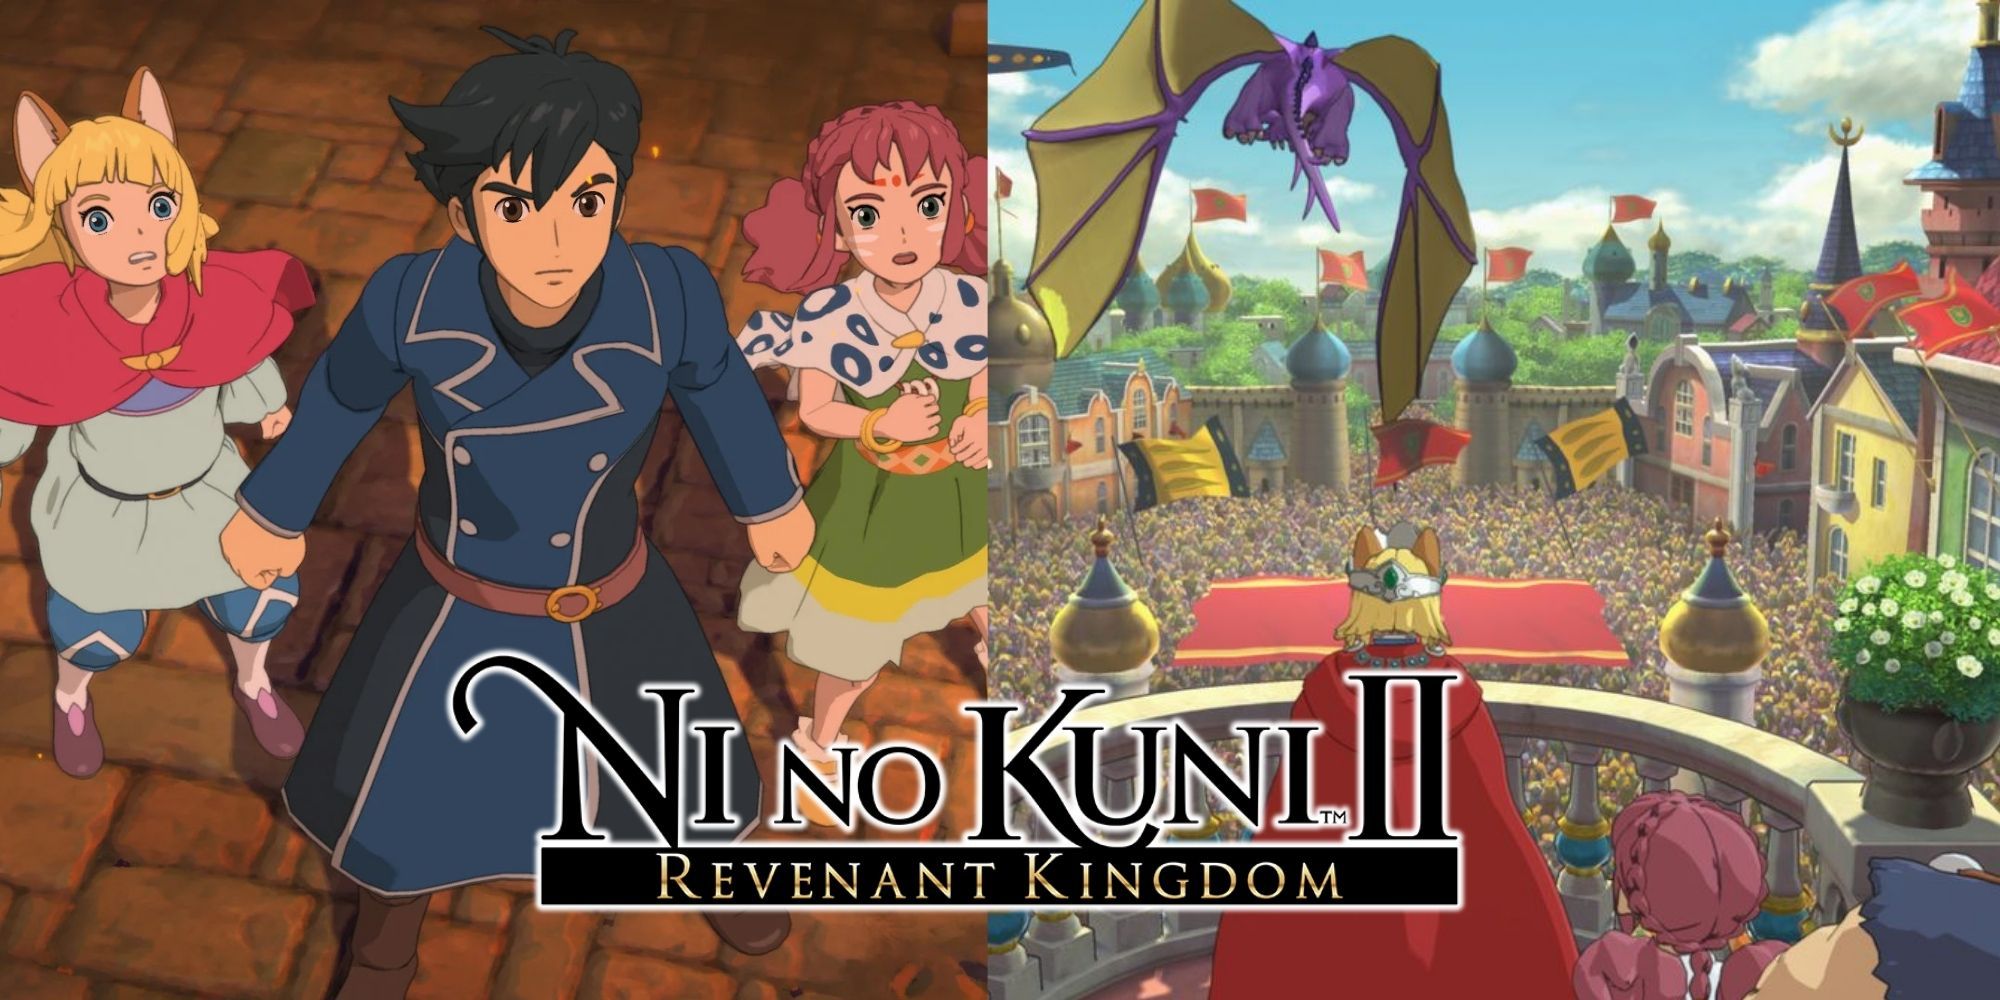 Ni No Kuni characters and kingdom